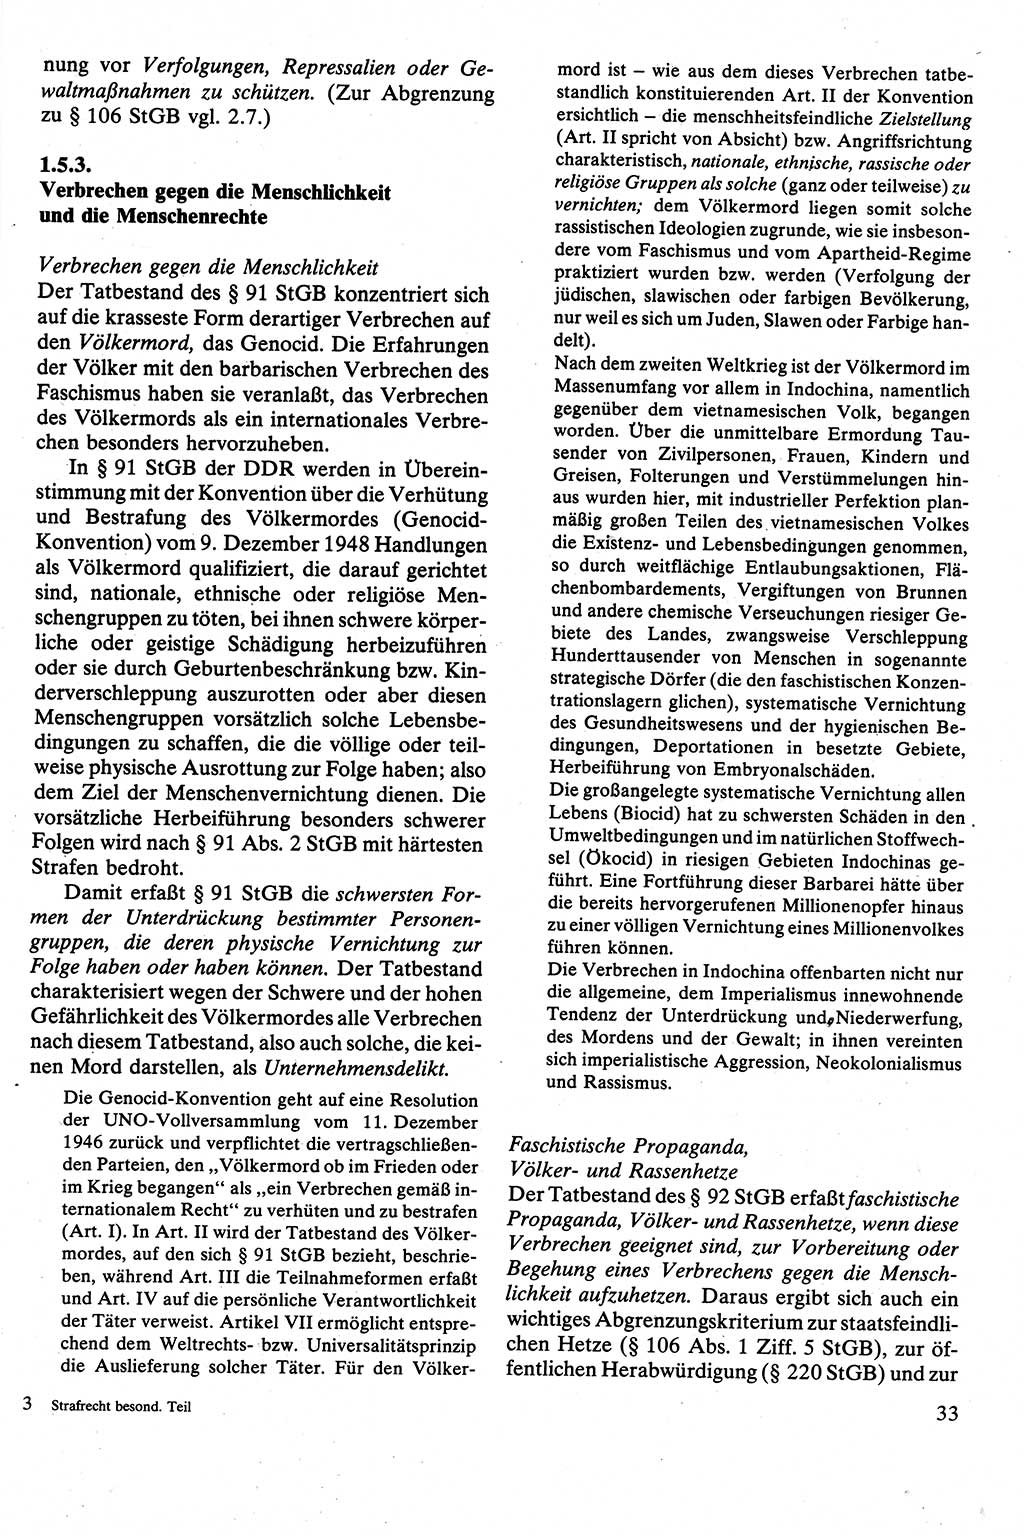 Strafrecht [Deutsche Demokratische Republik (DDR)], Besonderer Teil, Lehrbuch 1981, Seite 33 (Strafr. DDR BT Lb. 1981, S. 33)